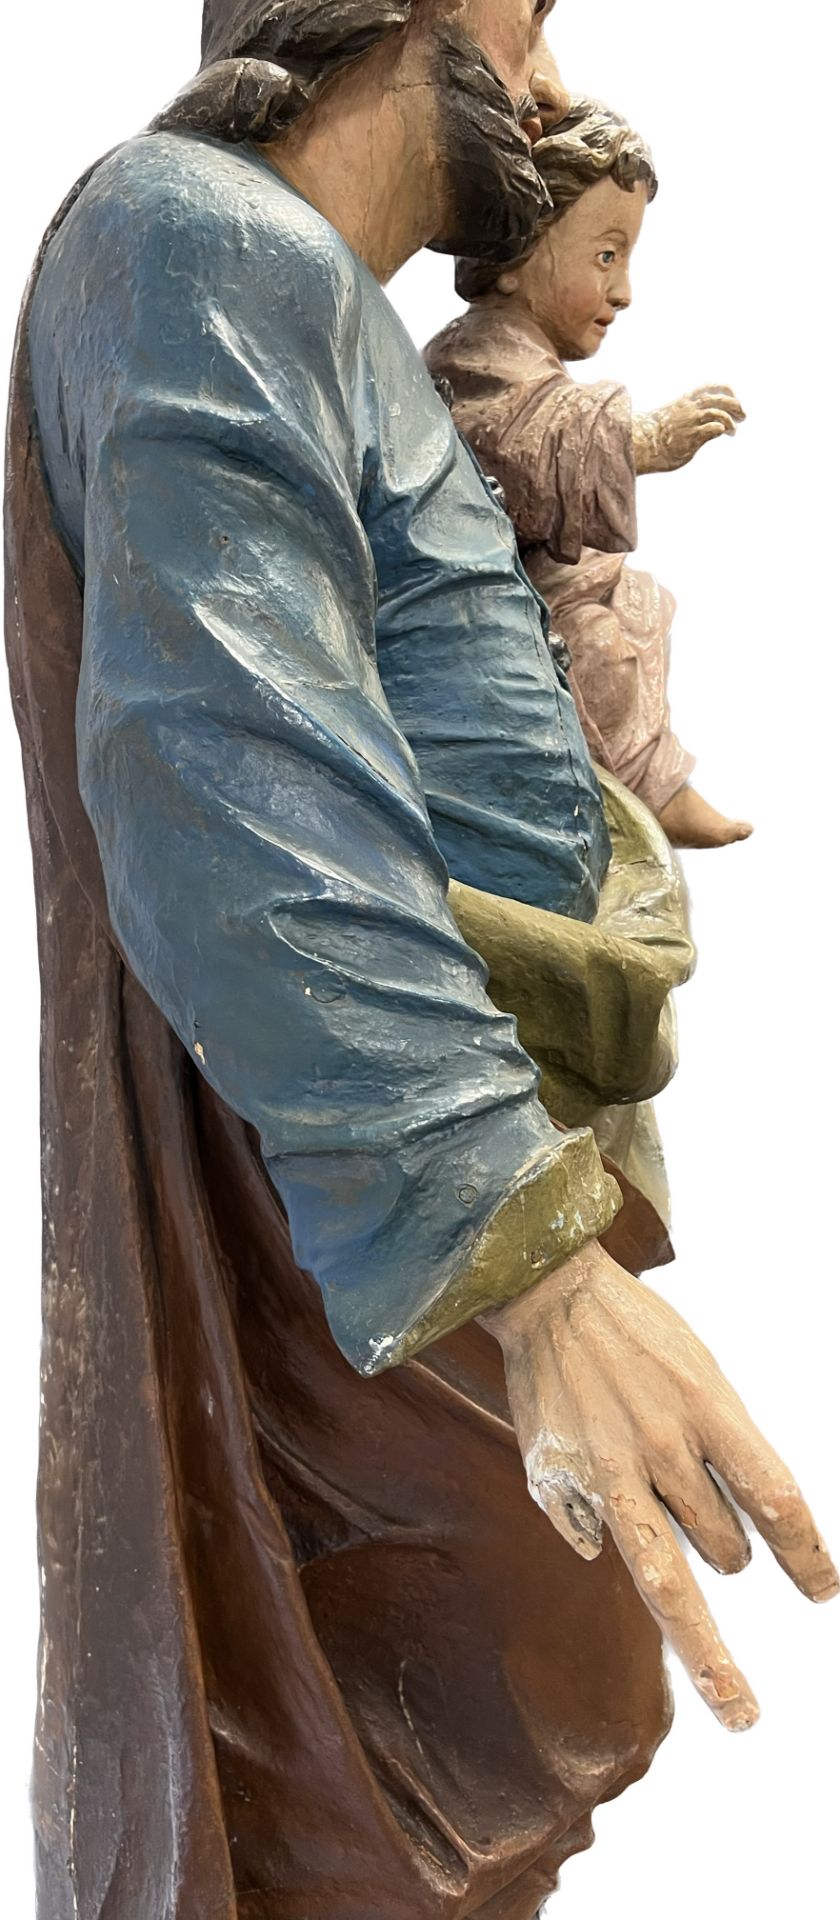 Lebensgroße Skulptur. Hl. Josef mit Christusknaben. Wohl 17. / 18. Jahrhundert. Süddeutschland. - Bild 12 aus 20